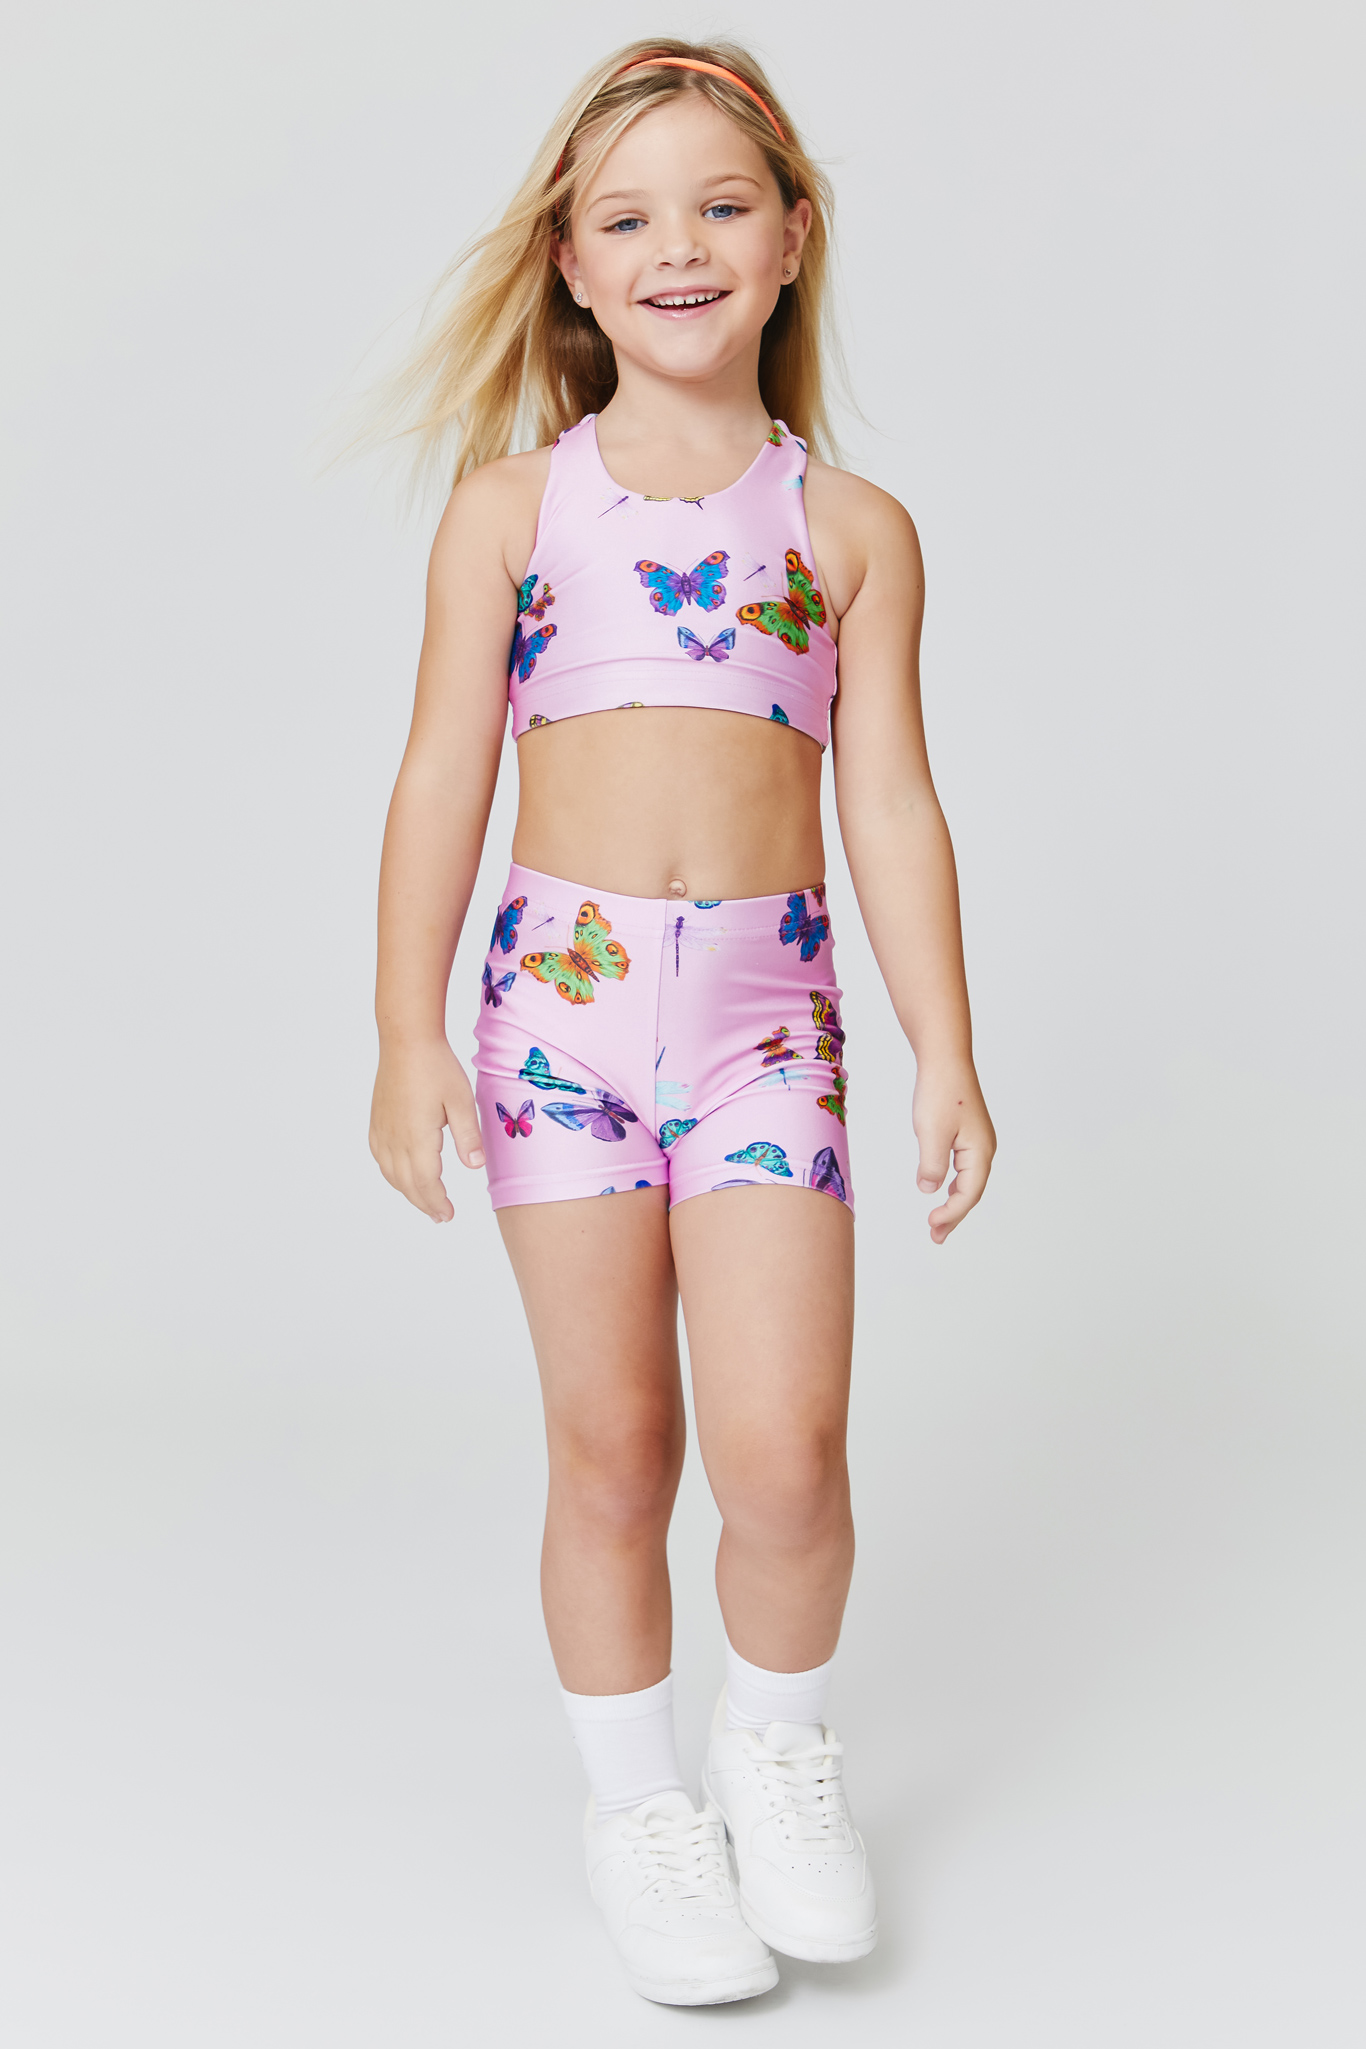 Kids Booty Shorts in Pink Neon Butterflies –